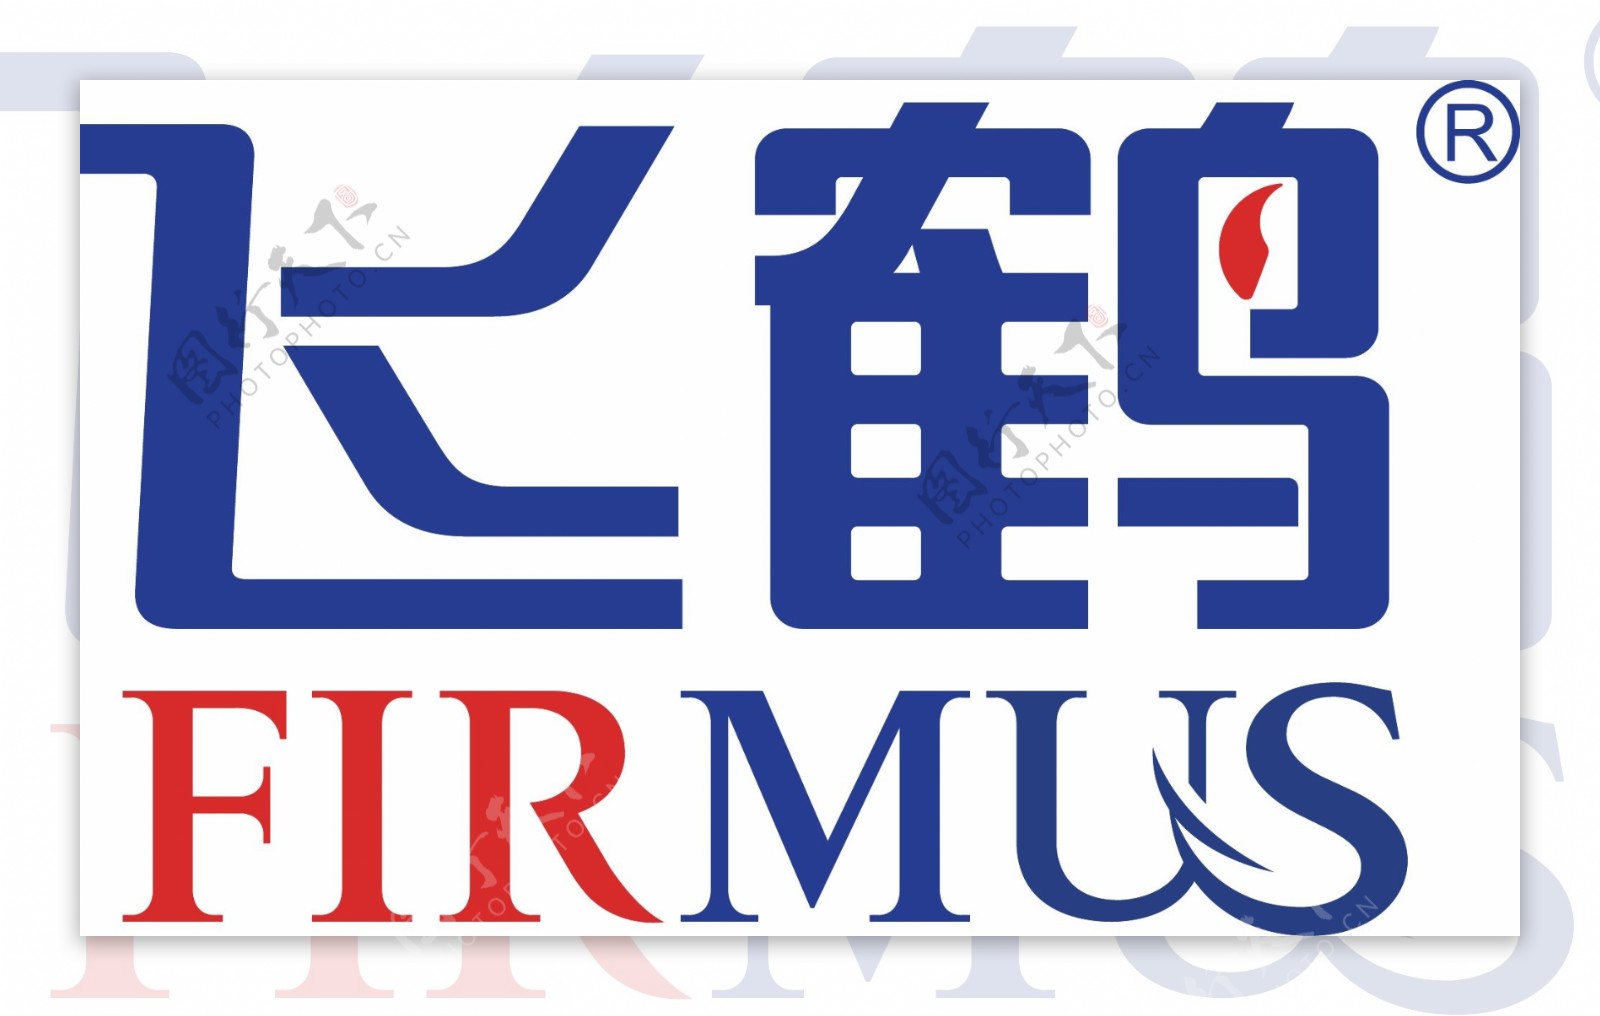 飞鹤logo